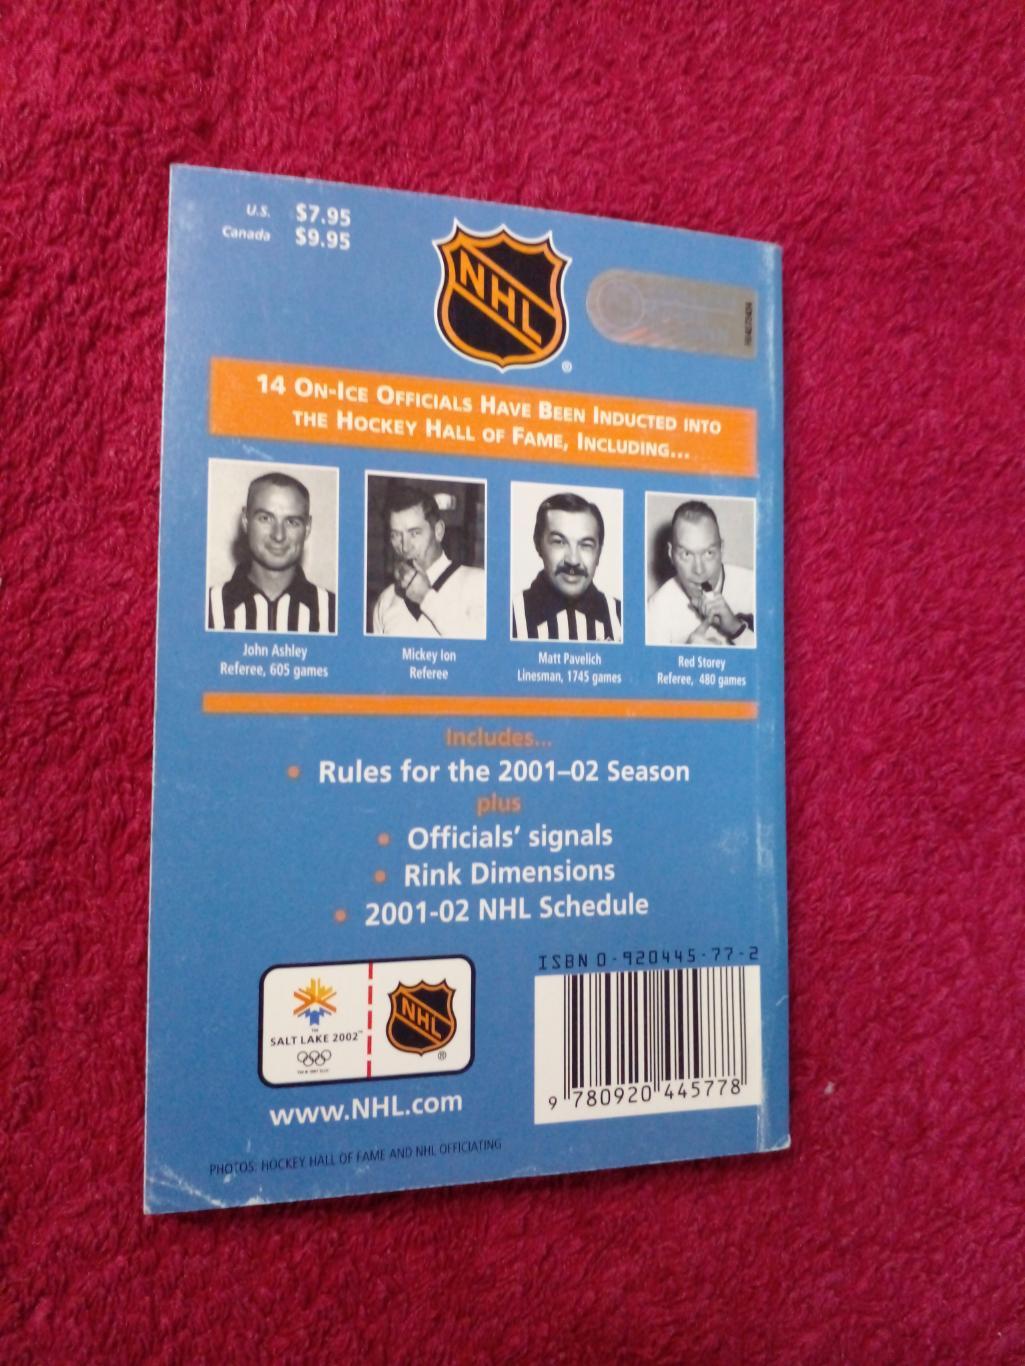 Справочник Хоккей НХЛ OFFICIAL RULES 2001-02. Обложка - Марио Лемье 1